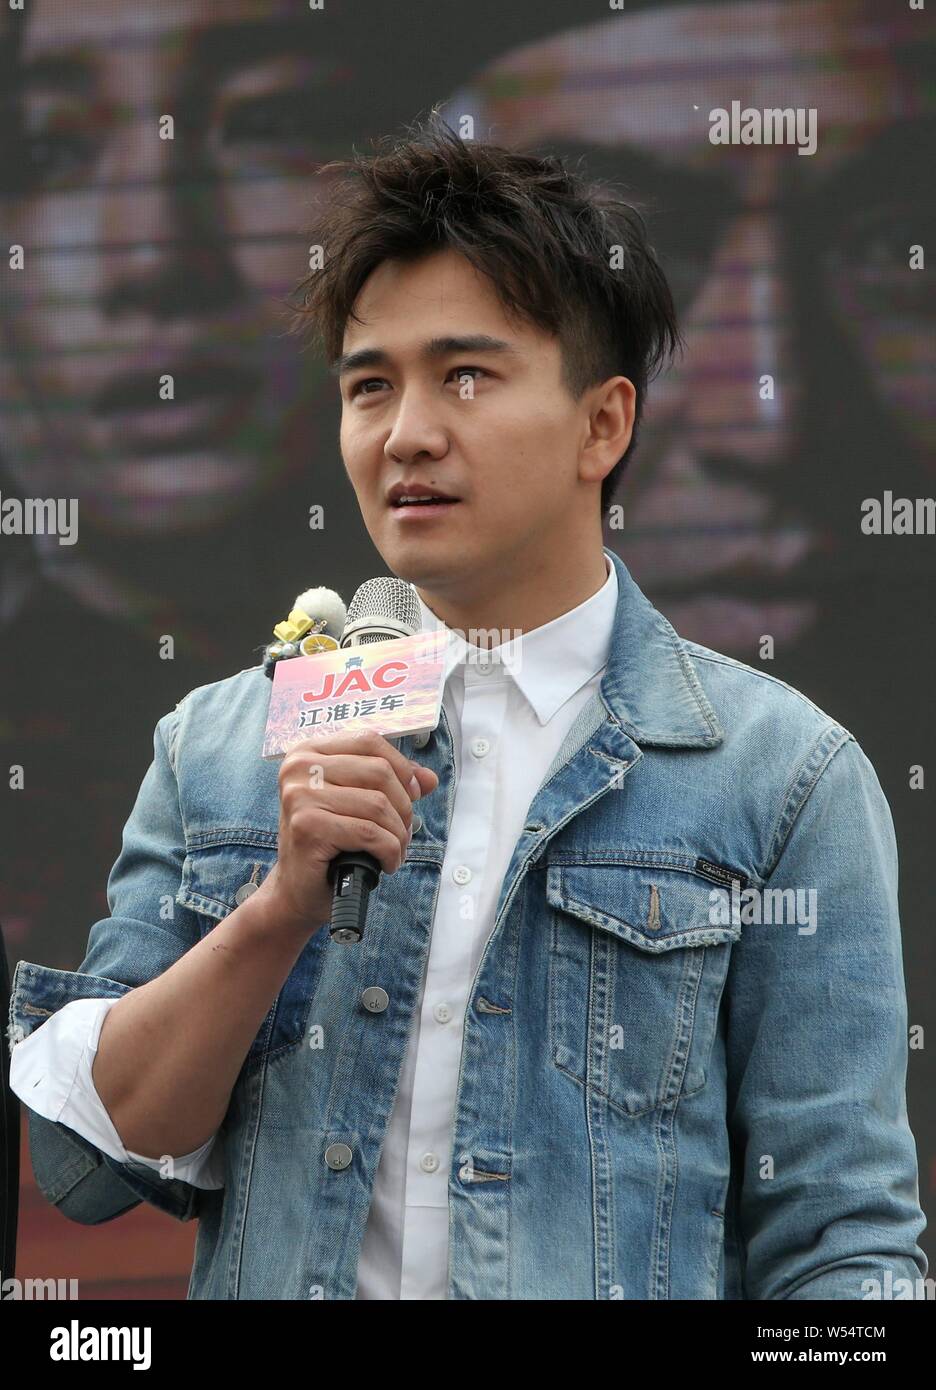 FILE--acteur chinois Zhai Tianlin assiste à une conférence de presse pour  la nouvelle série TV 'White Deer Plain' dans la ville de Xi'an, province du  Shaanxi du nord-ouest de la Chine Photo